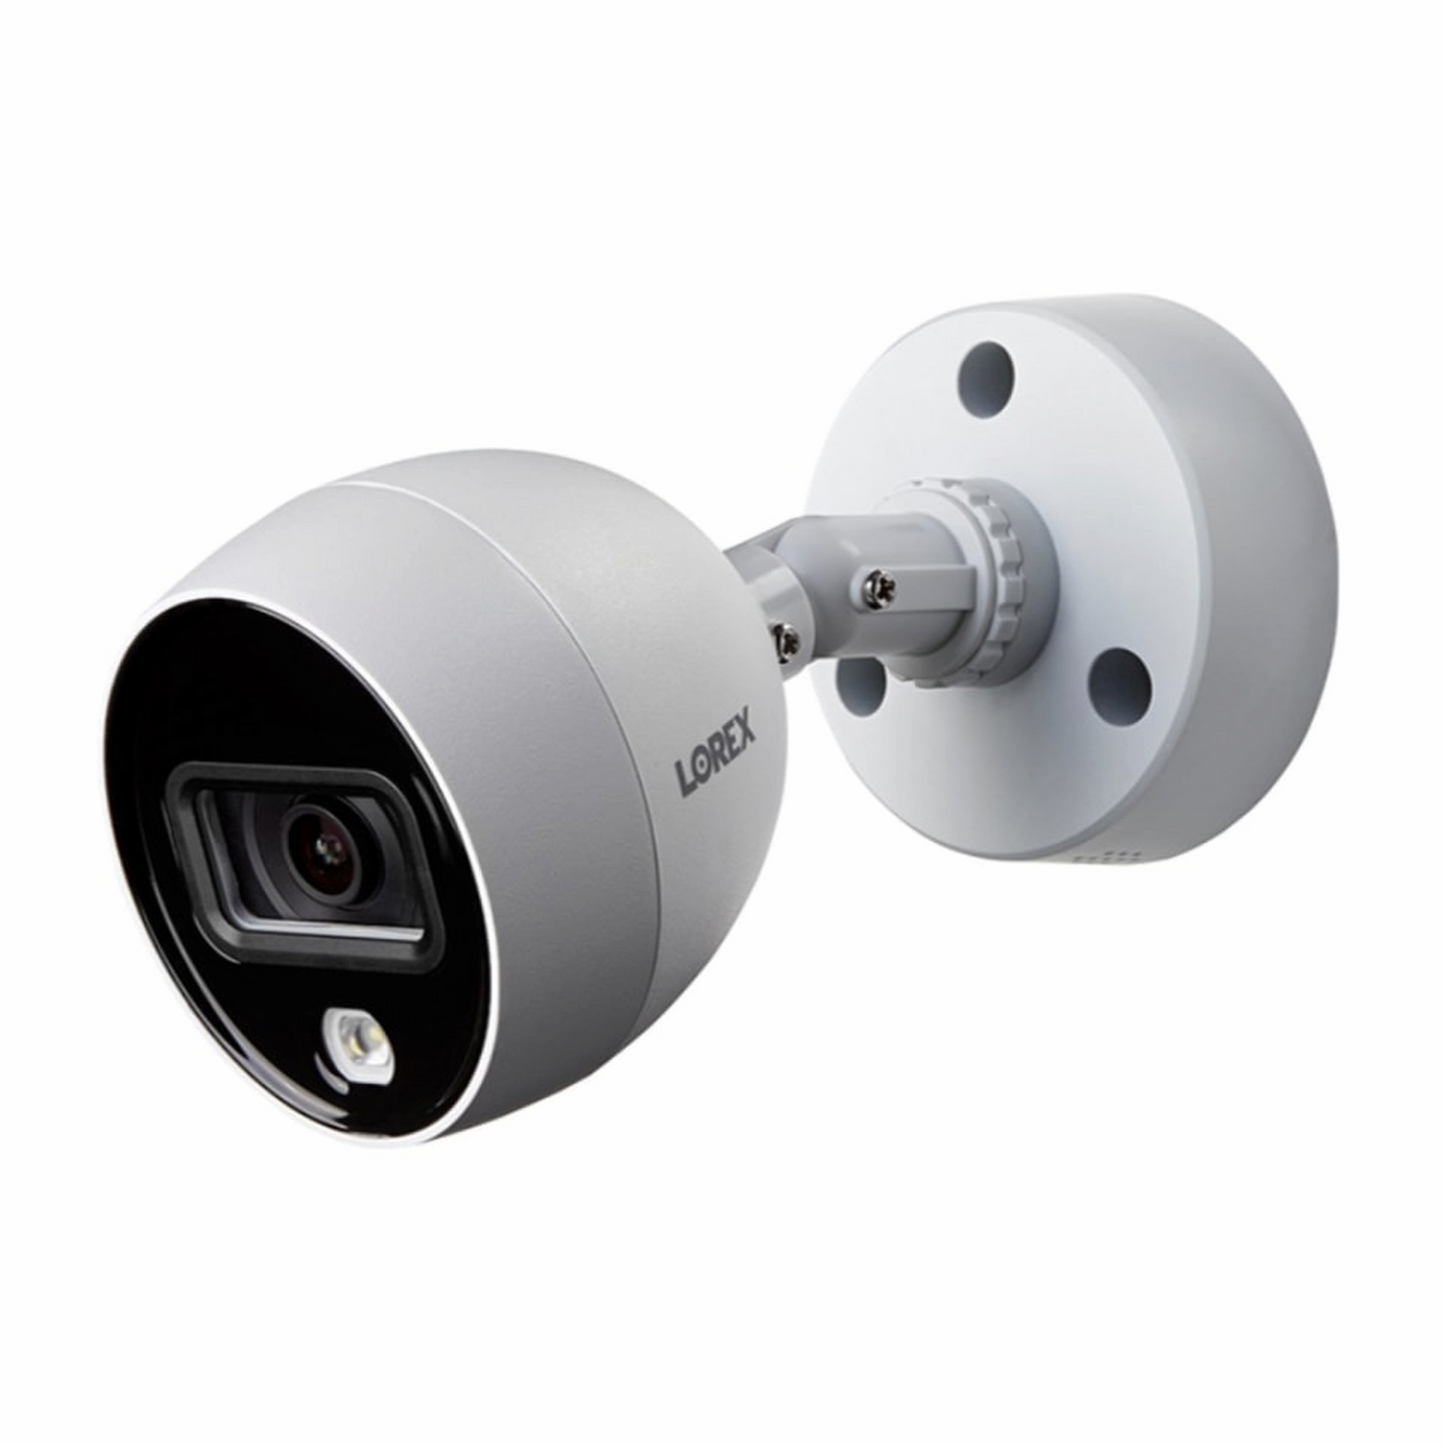 Sistema de Seguridad Lorex, 1 grabador de Video Digital